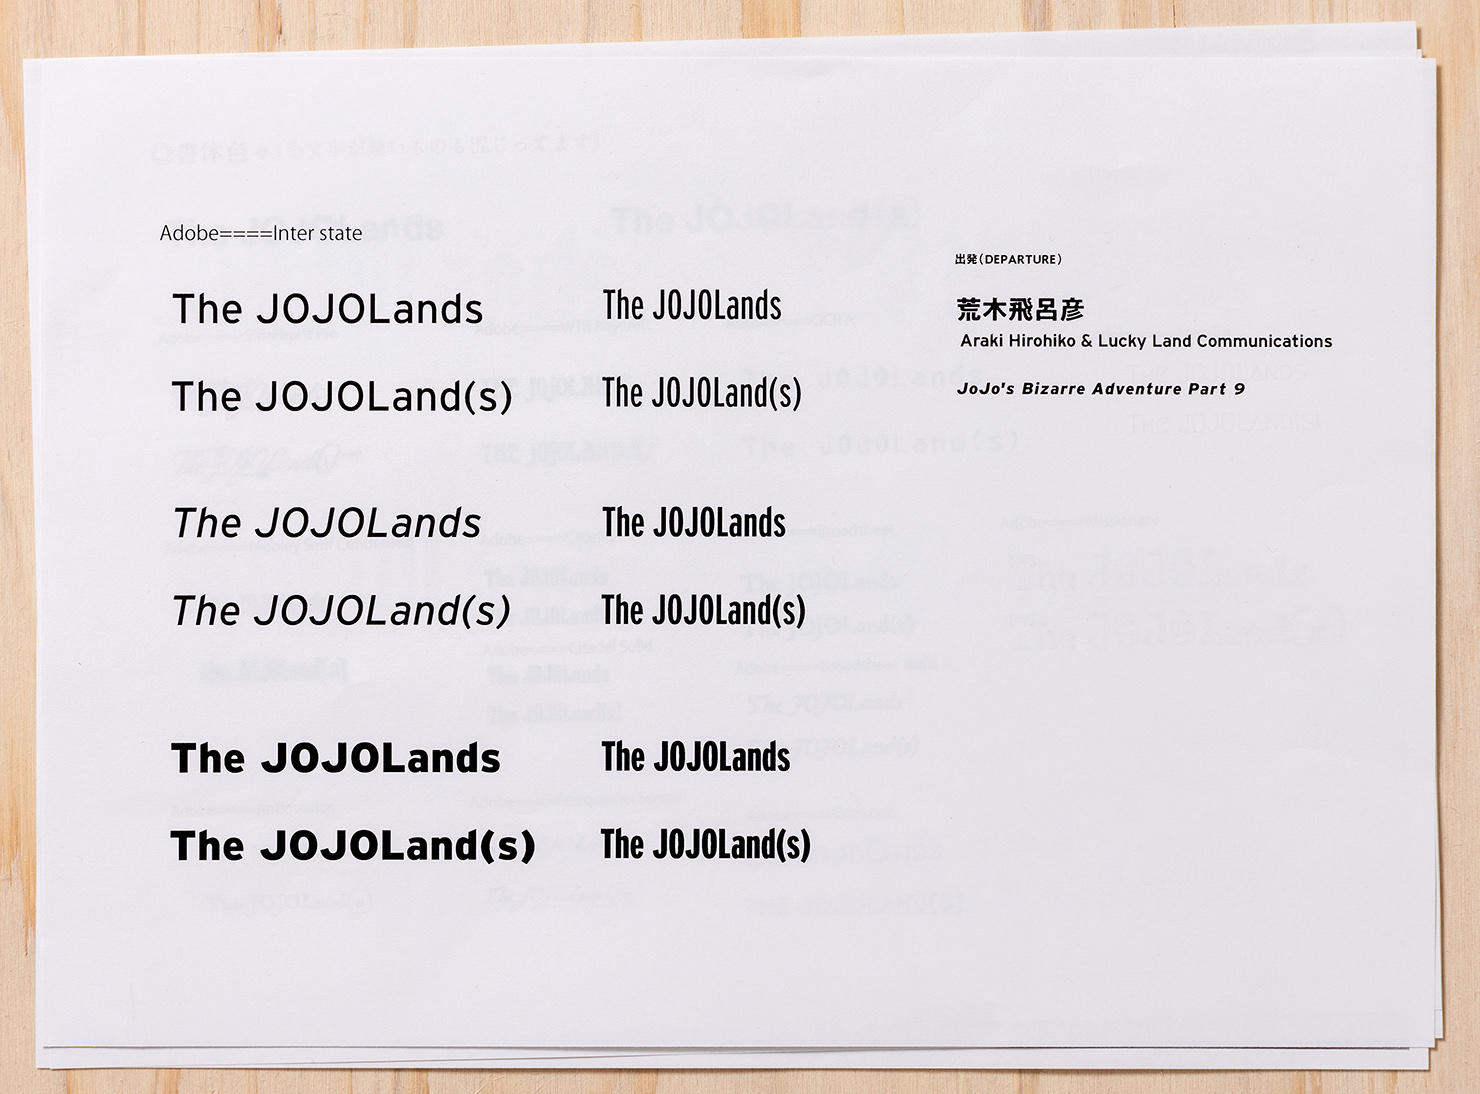 『ジョジョの奇妙な冒険 第9部 The JOJOLands』（ザ・ジョジョランズ）のベースのロゴ「Interstate」使い